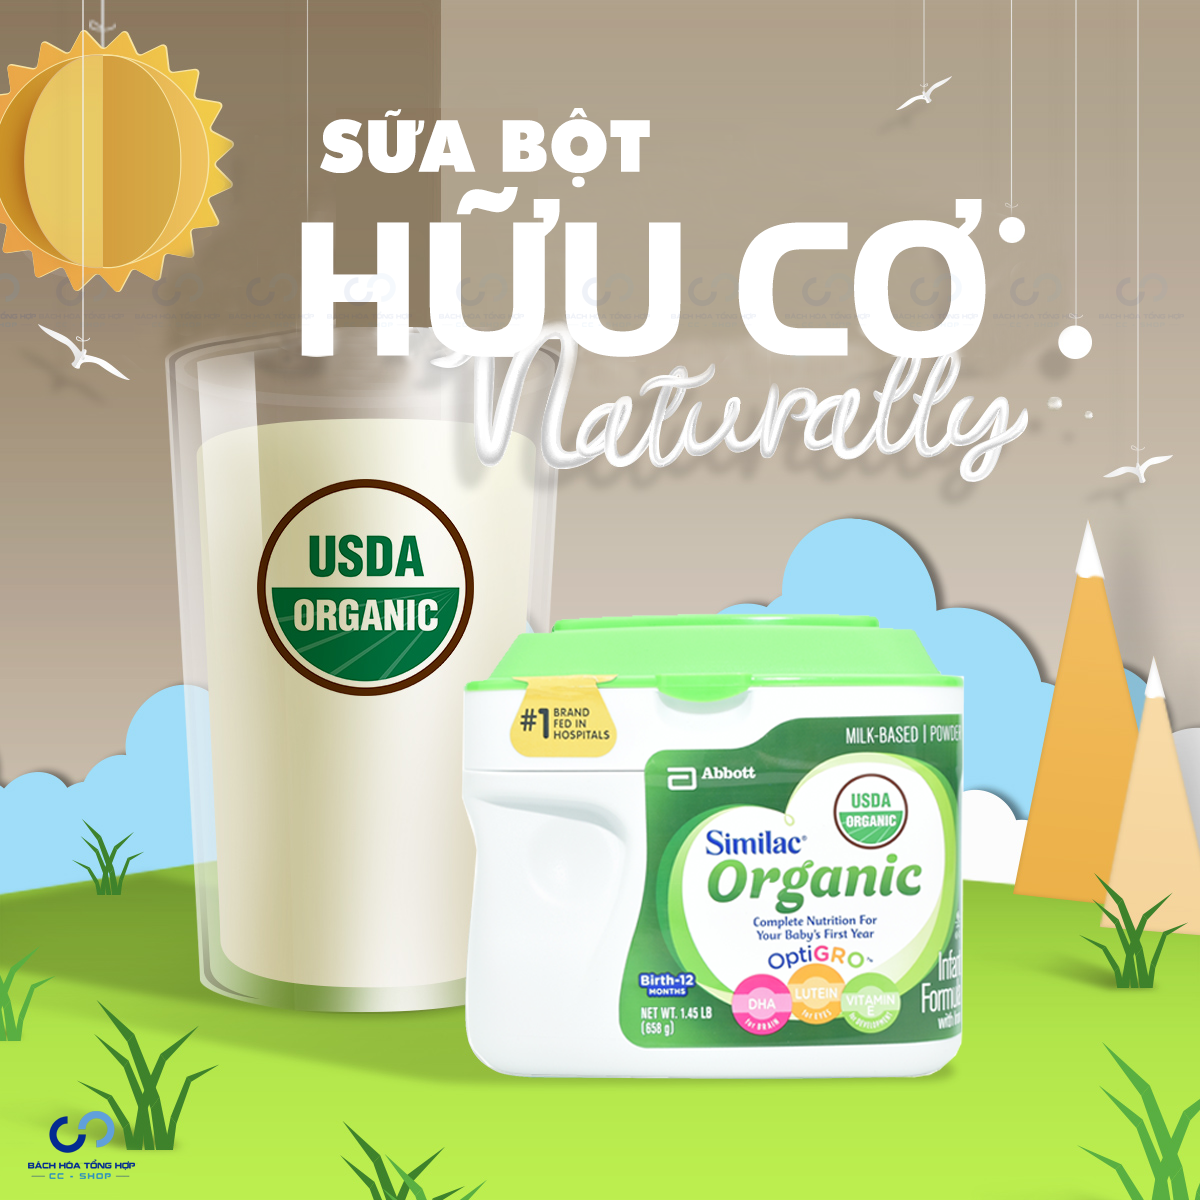 Sữa bột hữu cơ Similac Organic 658g dành cho trẻ sơ sinh 0-12 tháng tuổi.